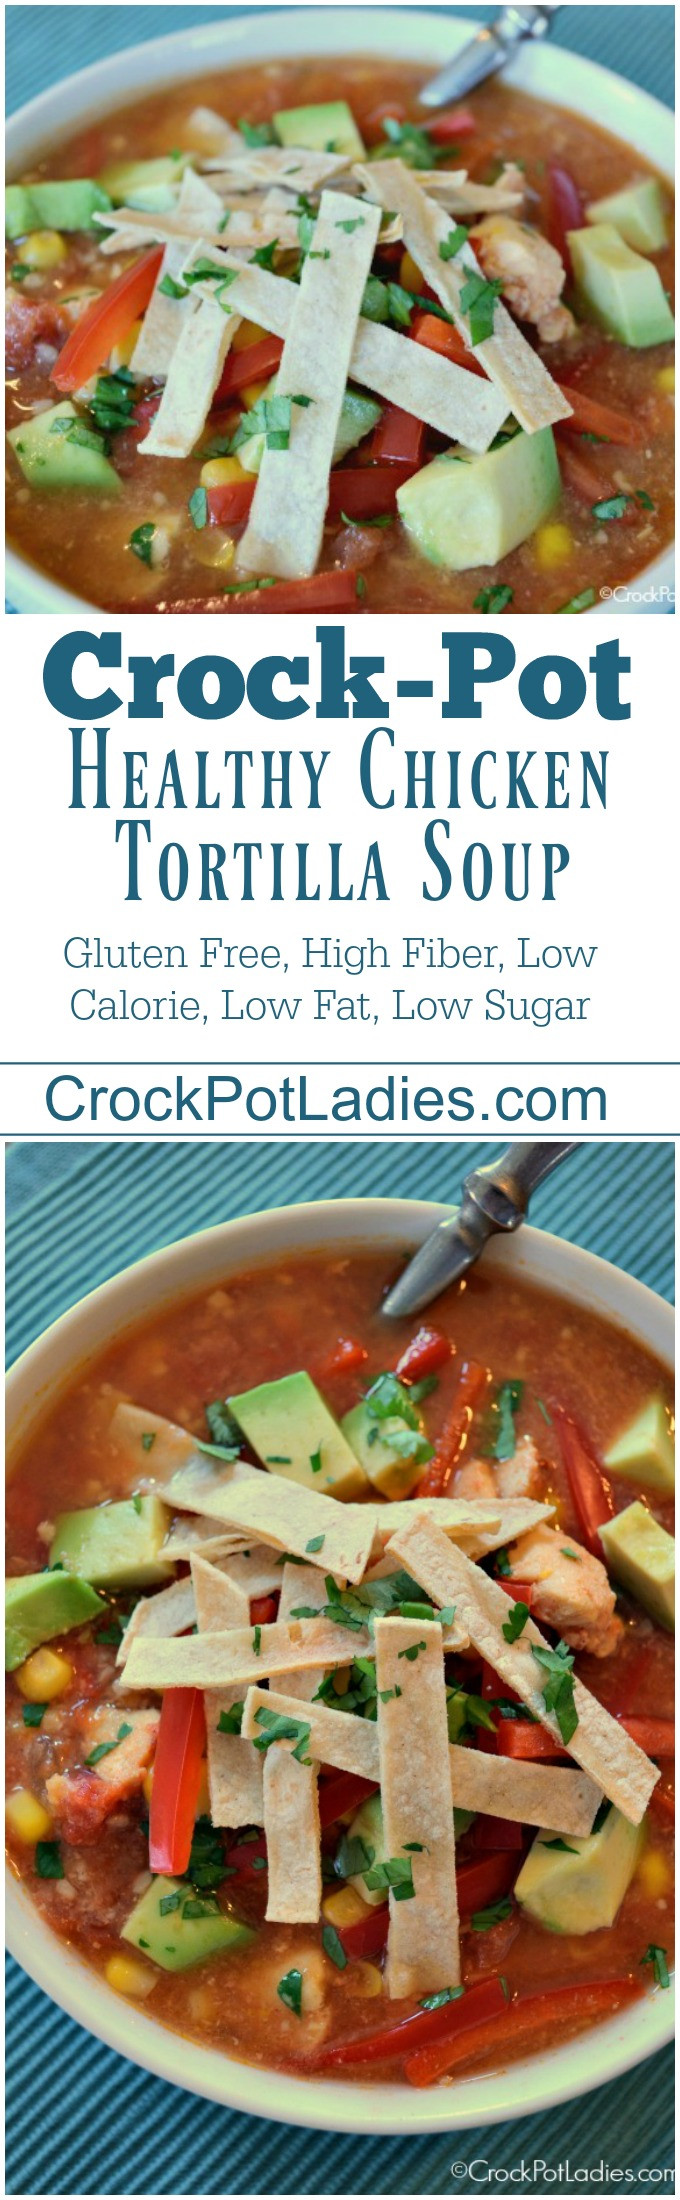 Healthy Gluten Free Crock Pot Recipes
 Crock Pot Healthy Chicken Tortilla Soup Crock Pot La s